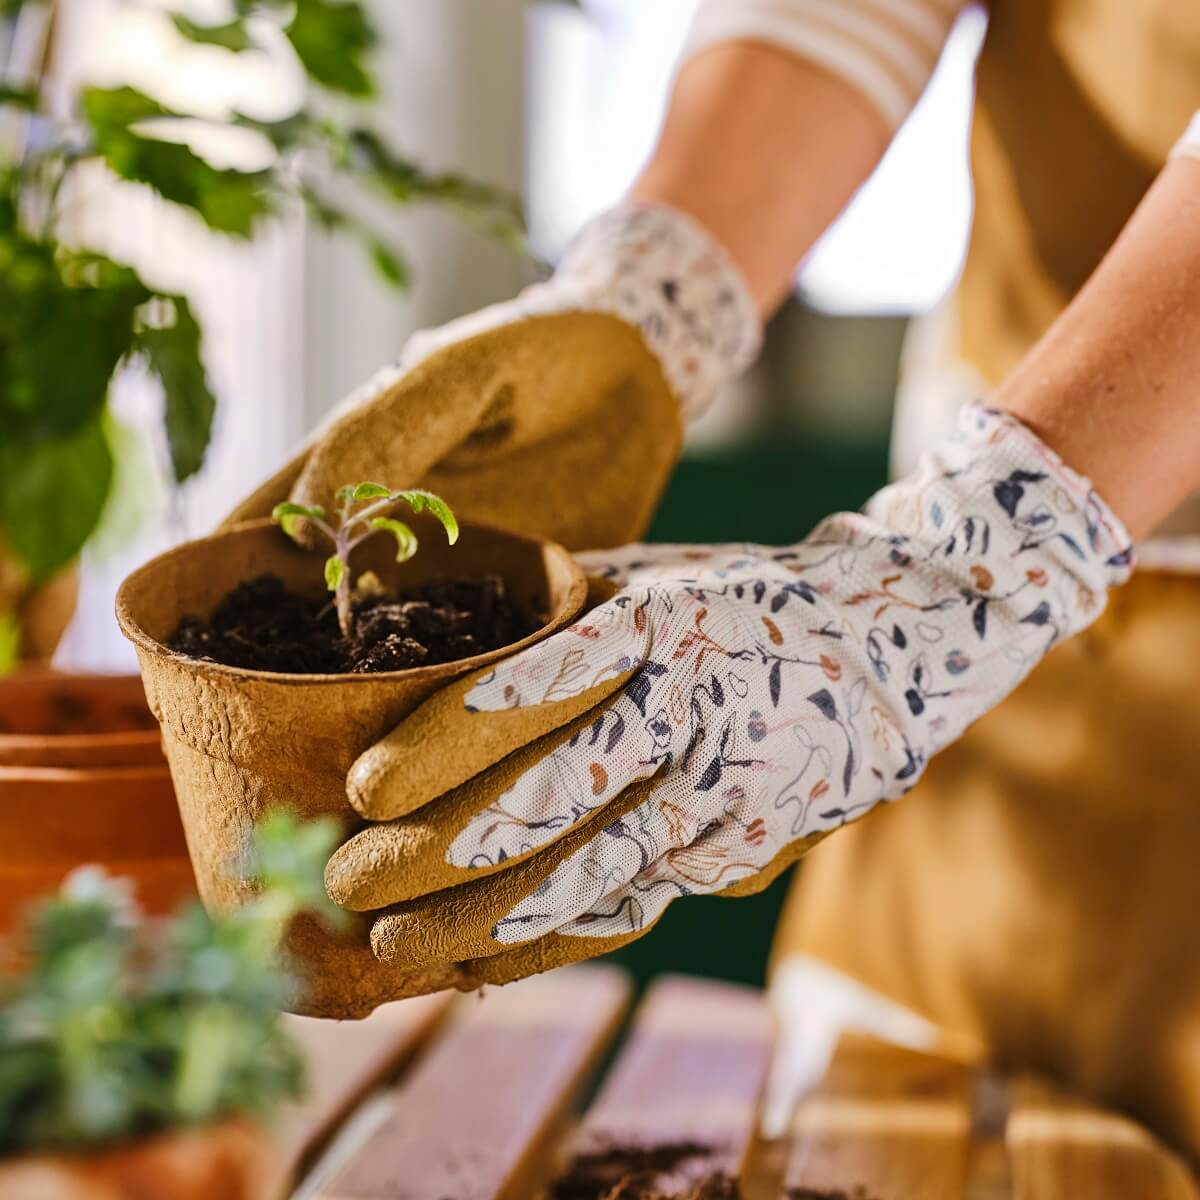 ikea-daksjus-new-collection-gardening-gloves